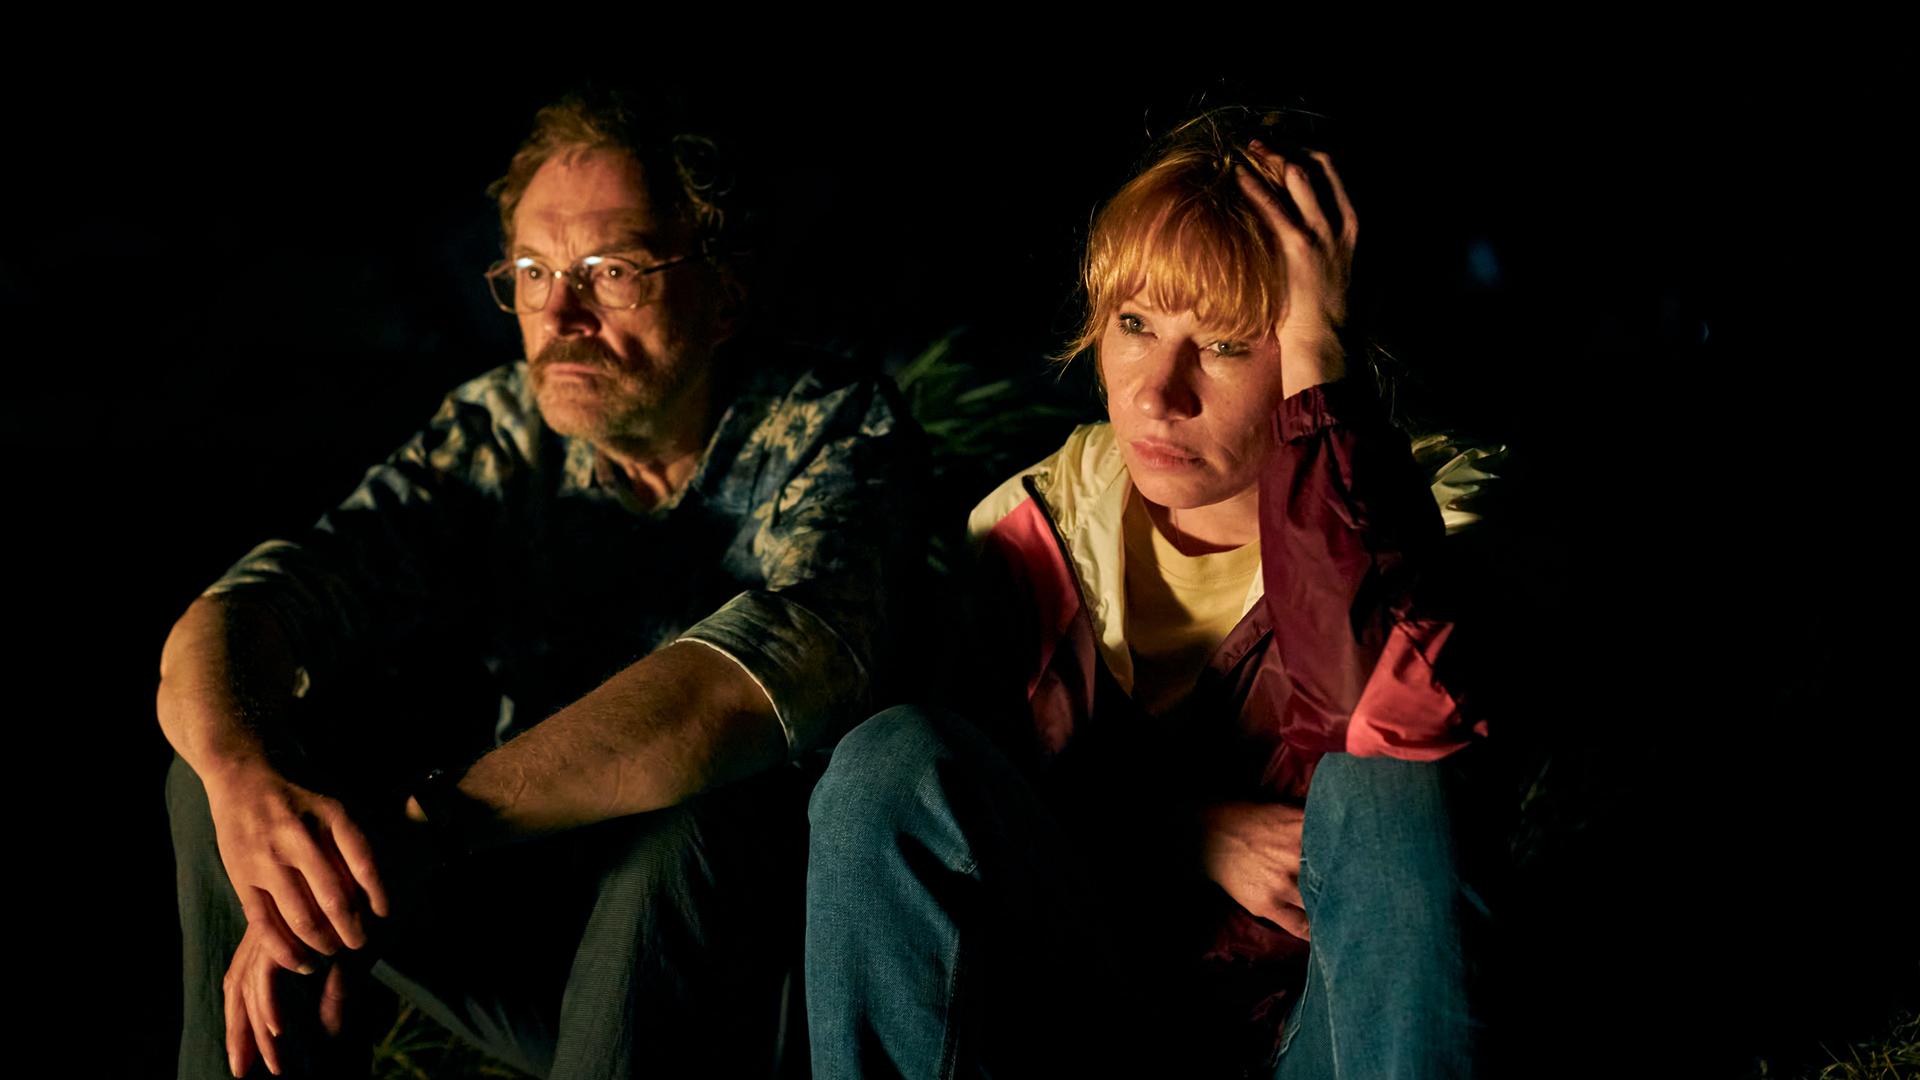 Josef Hader und Birgit Minichmayr sitzen in einer Szene  des Films  "Andrea lässt sich scheiden" in der Dunkelheit nebeneinander..